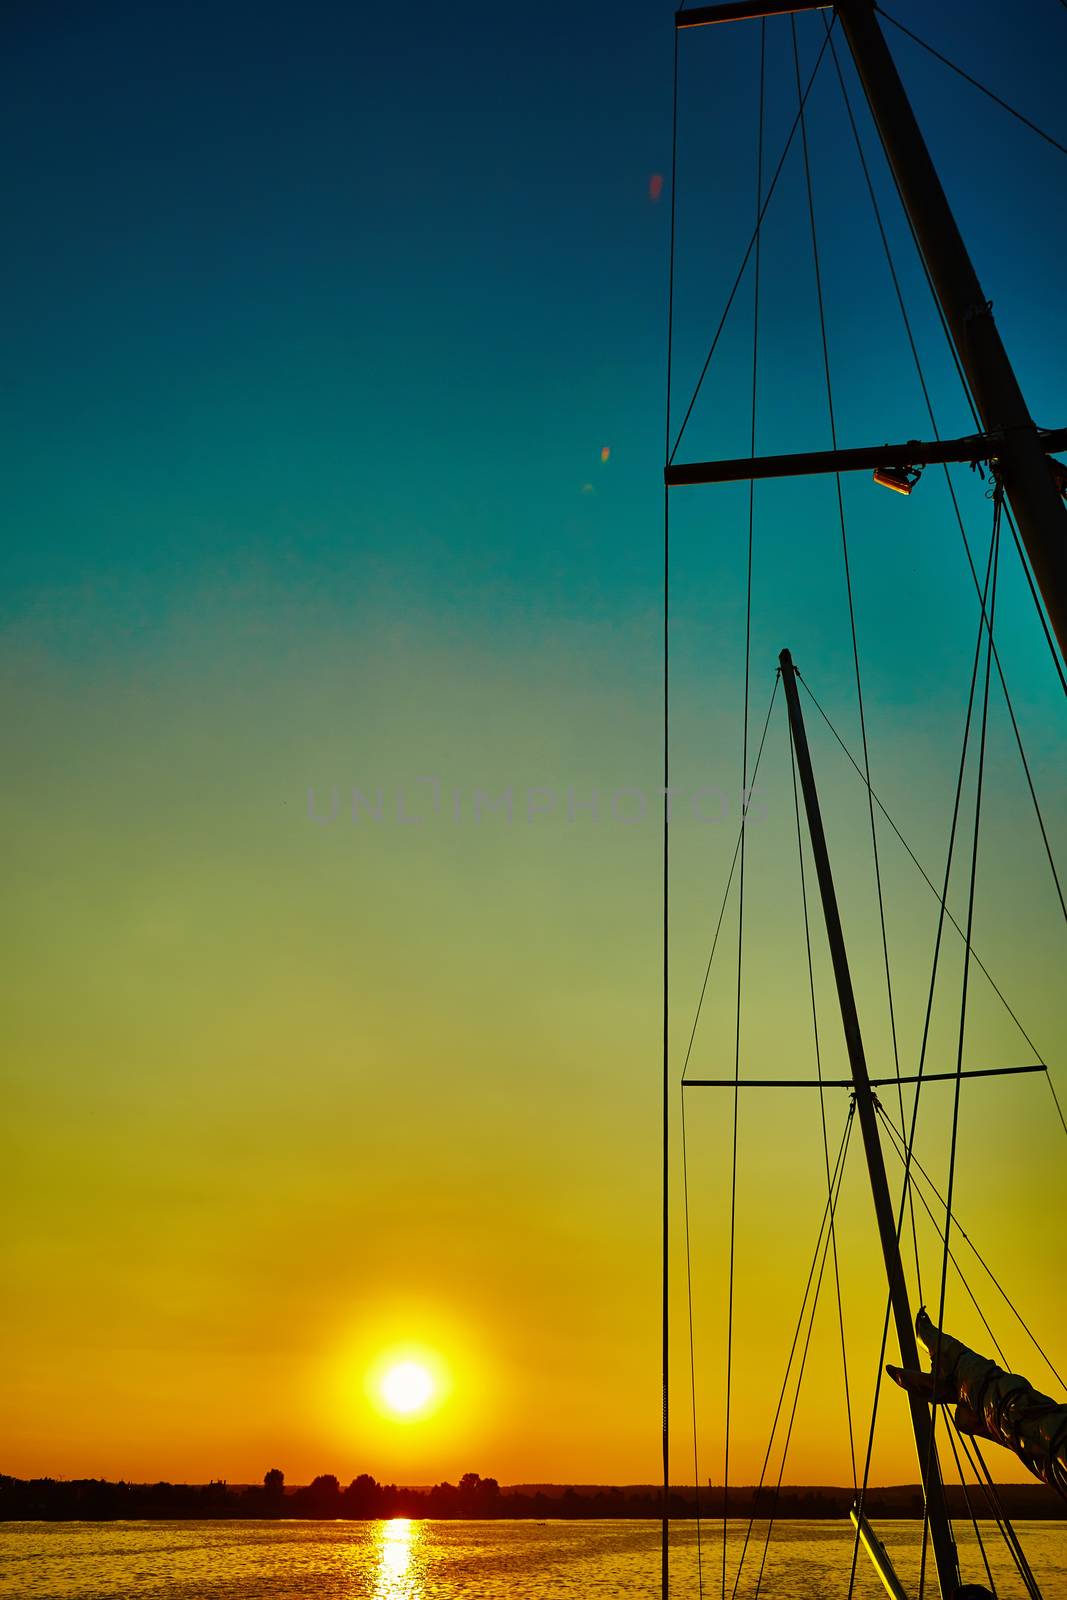 Sail boat gliding in sea at sunset by sarymsakov